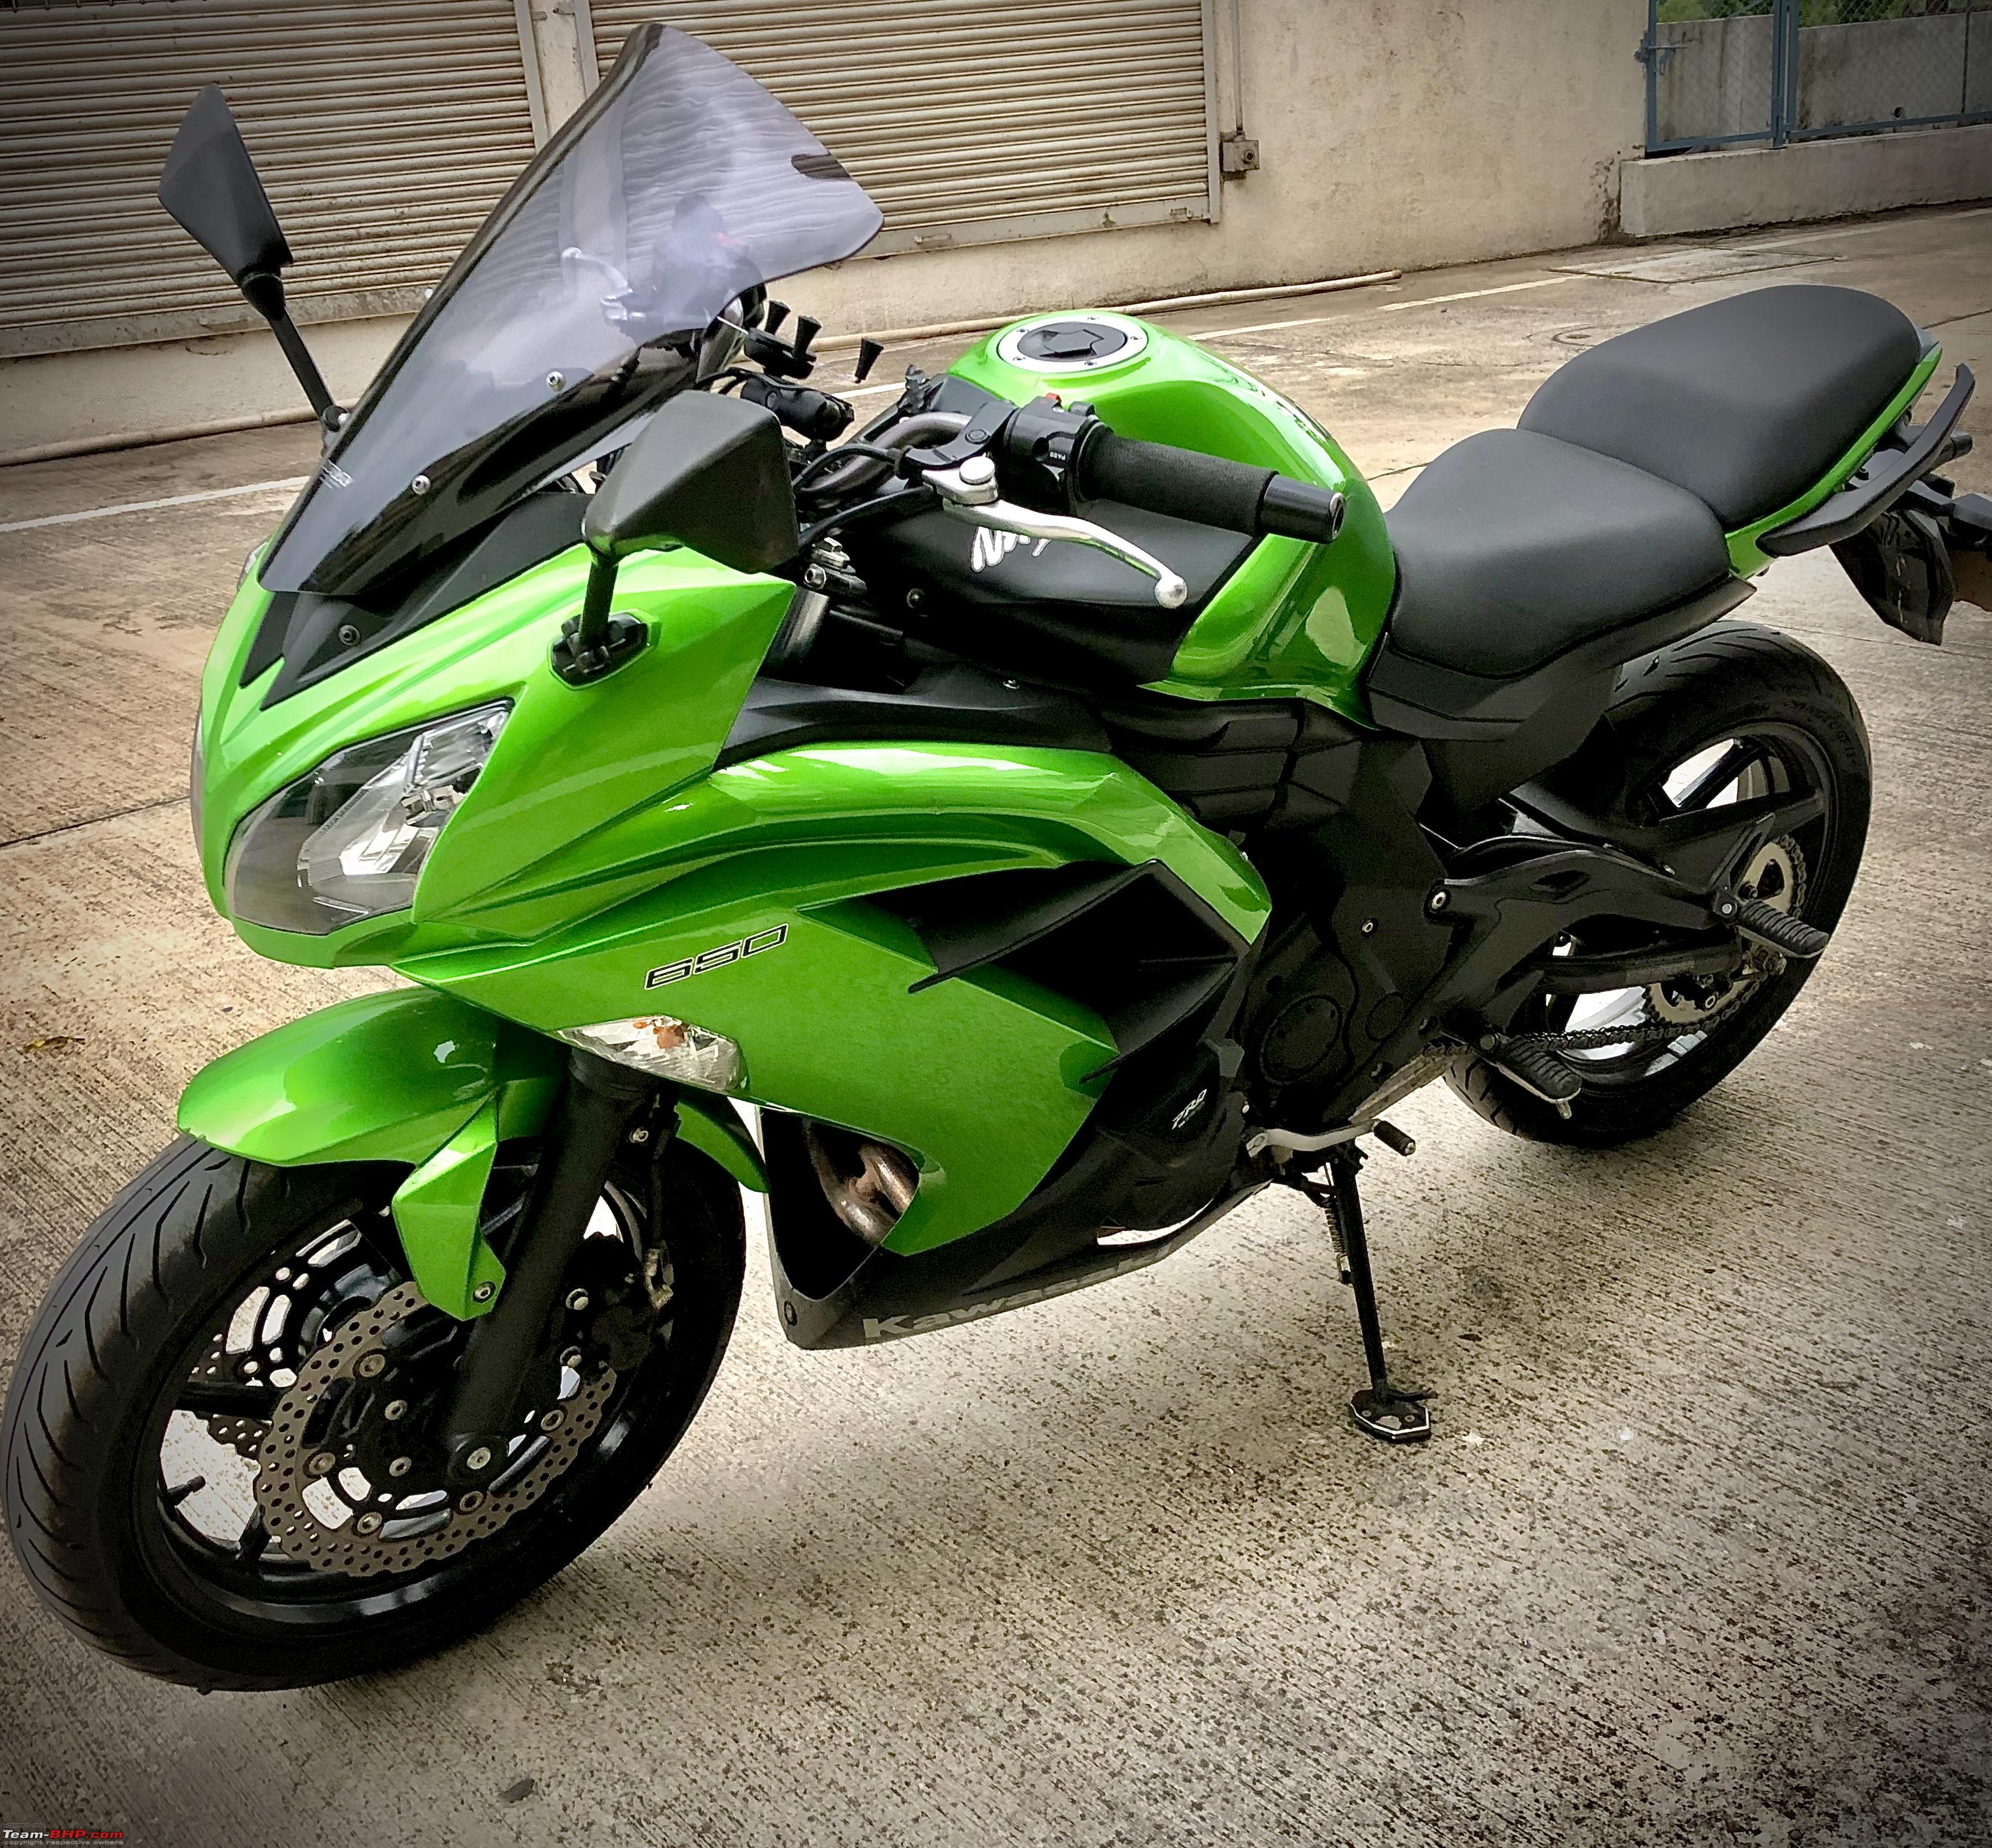 My Pre-Owned Kawasaki Ninja 650 | EDIT: Sold and bought back - 4 - Team-BHP